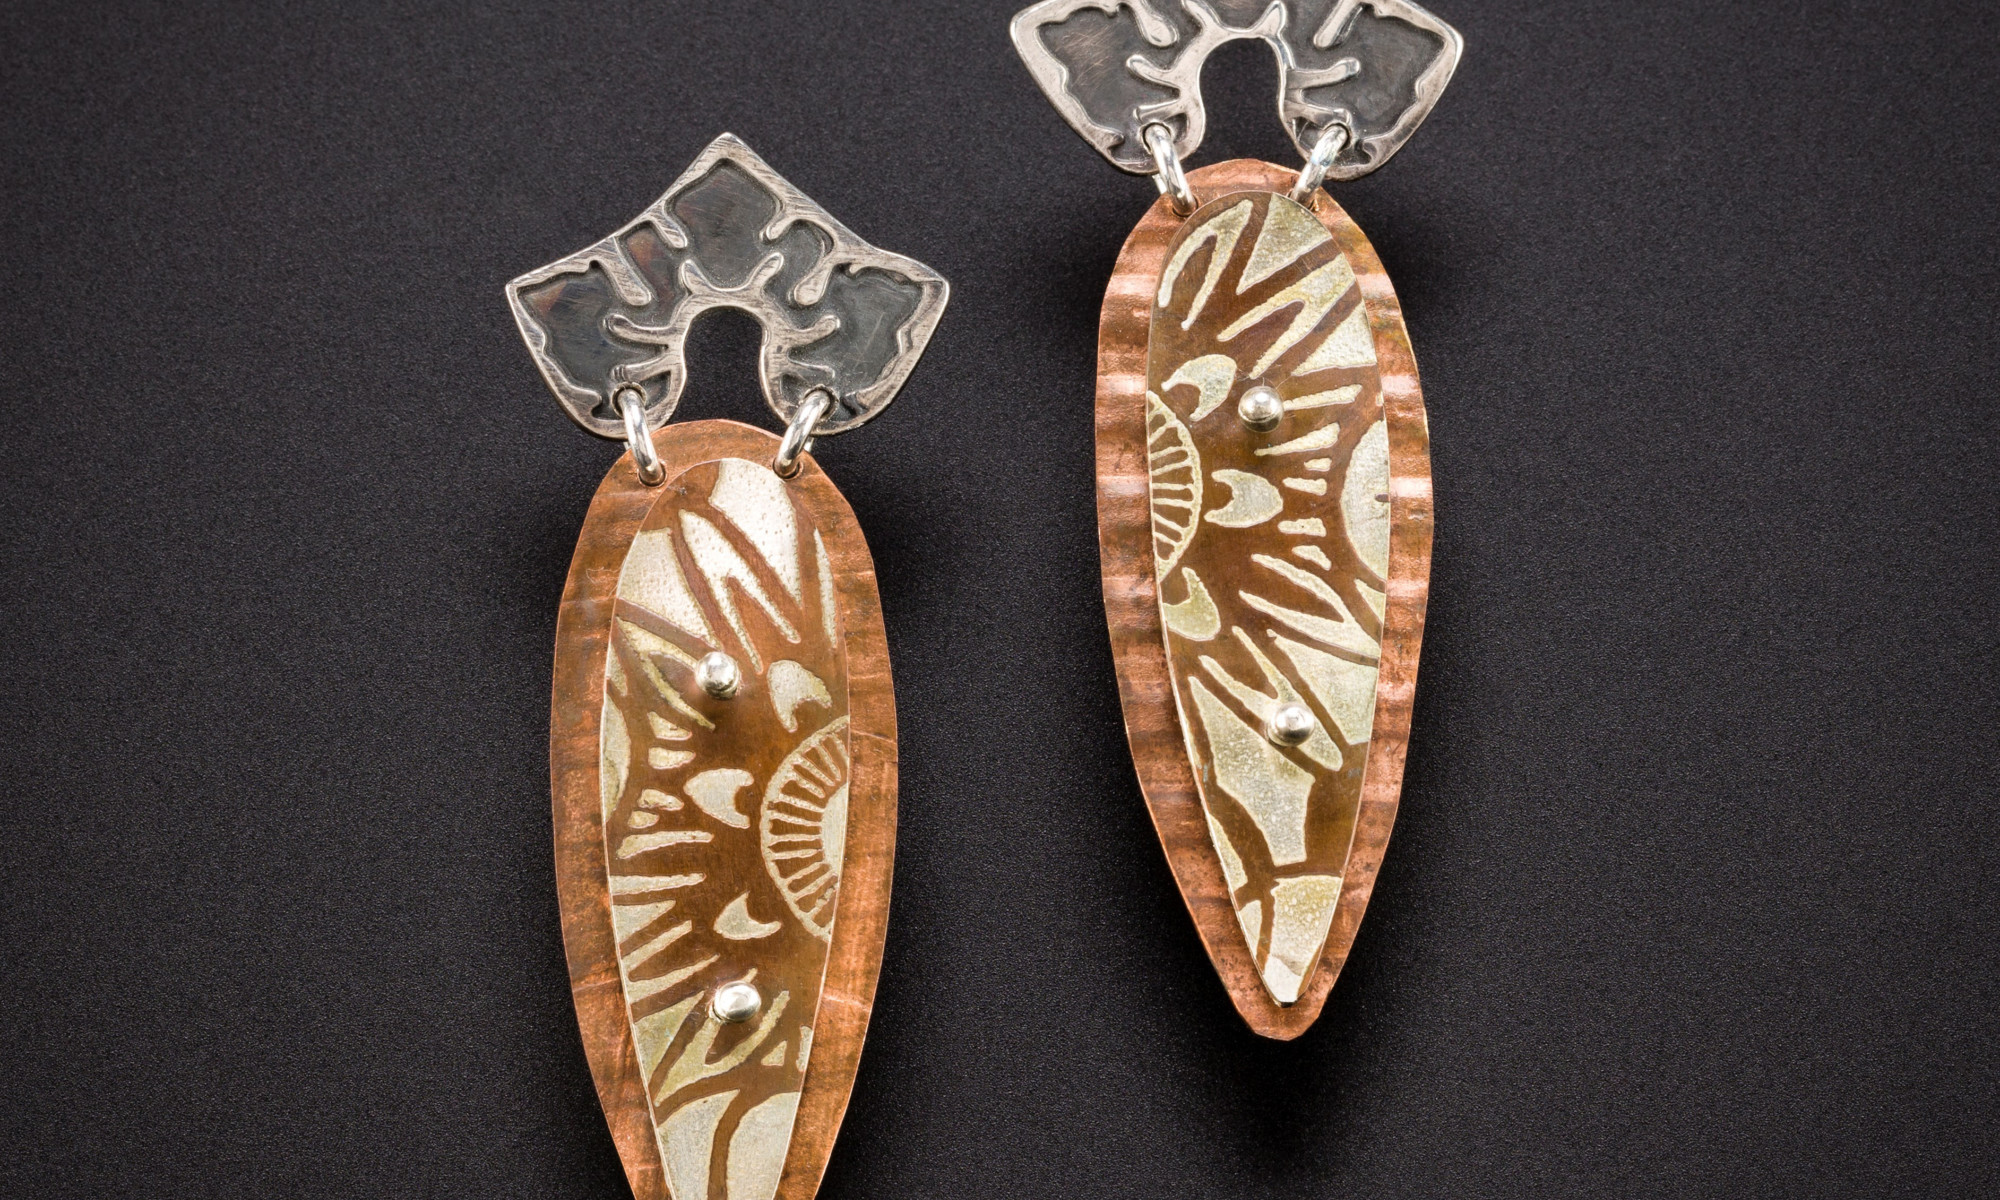 pair of earrings by Julie Packer on a dark background